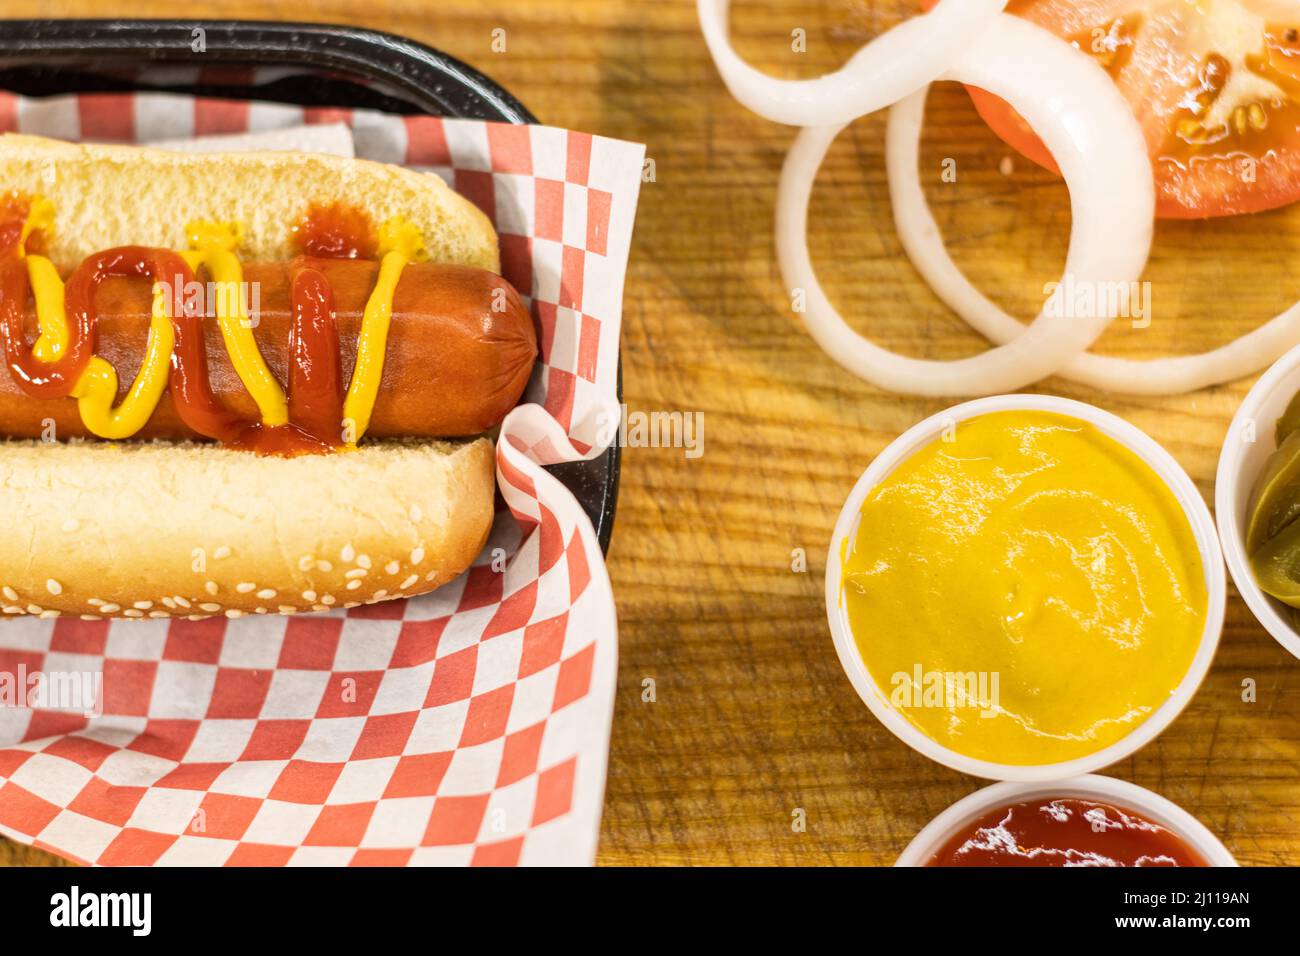 Perro caliente preparado comida chatarra comida rápida ketchup mostaza platillo epicureo Stock Photo